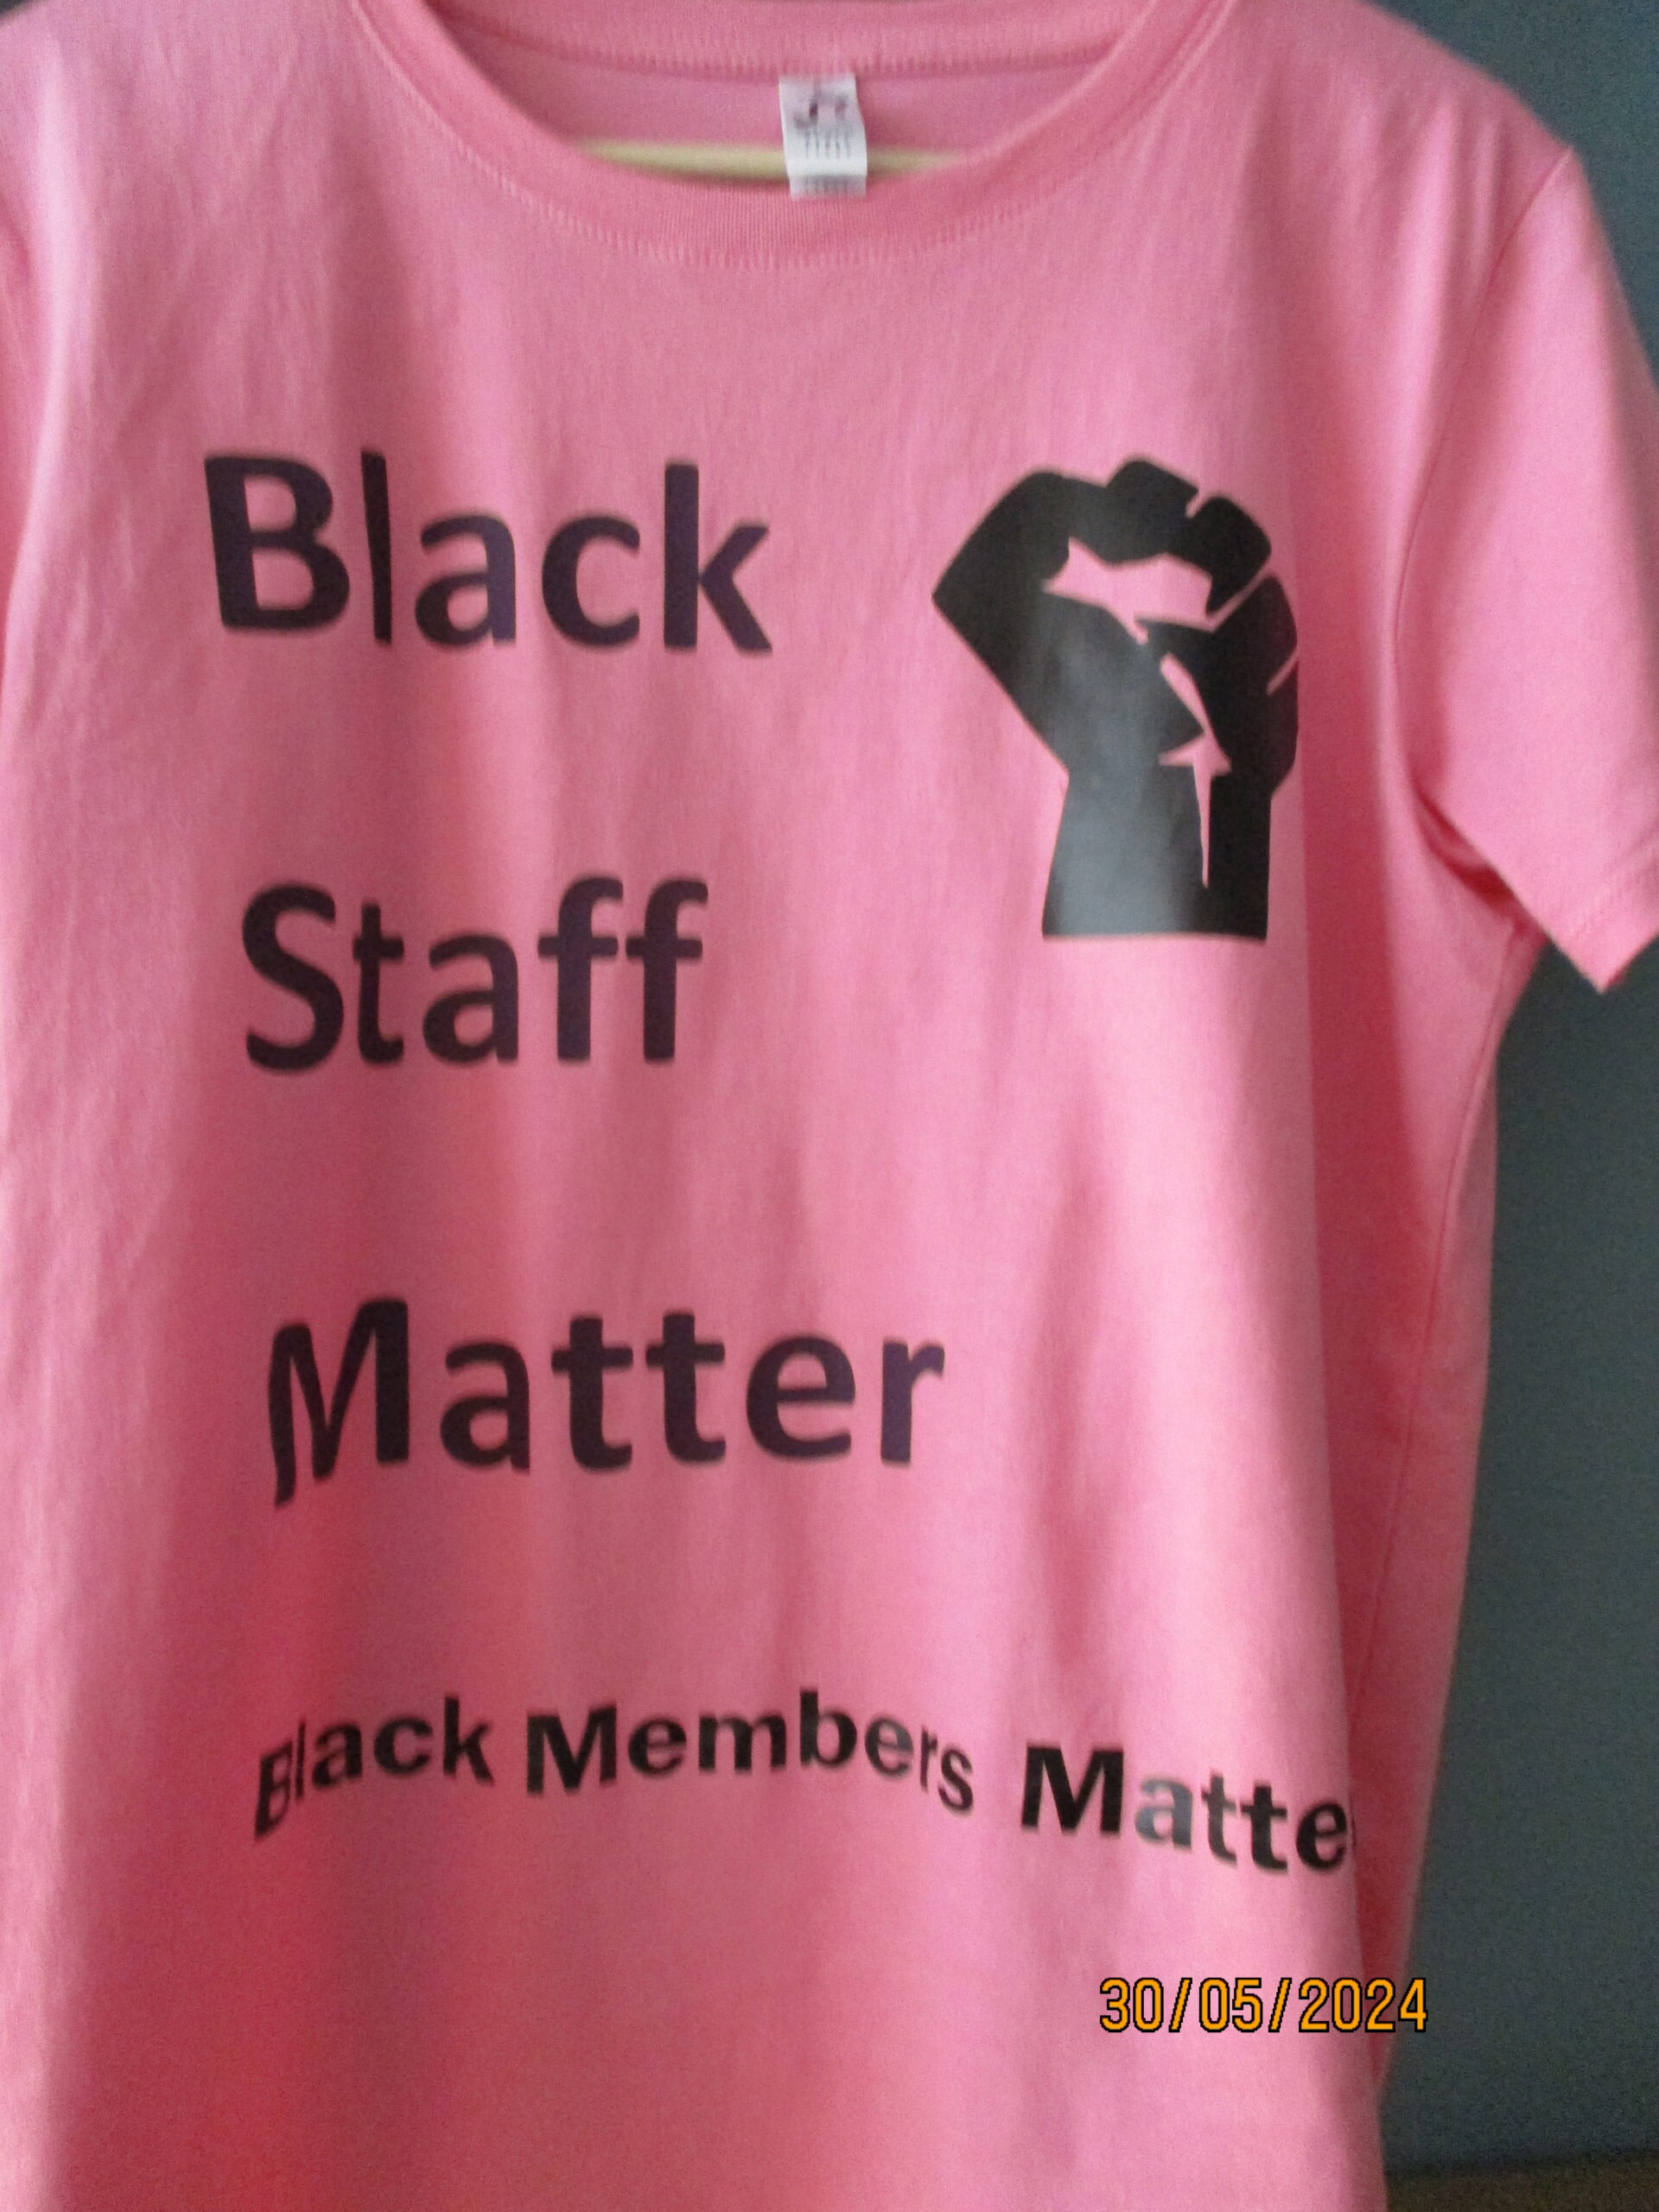 Black Staff Matter T-Shirt at UCU Congress